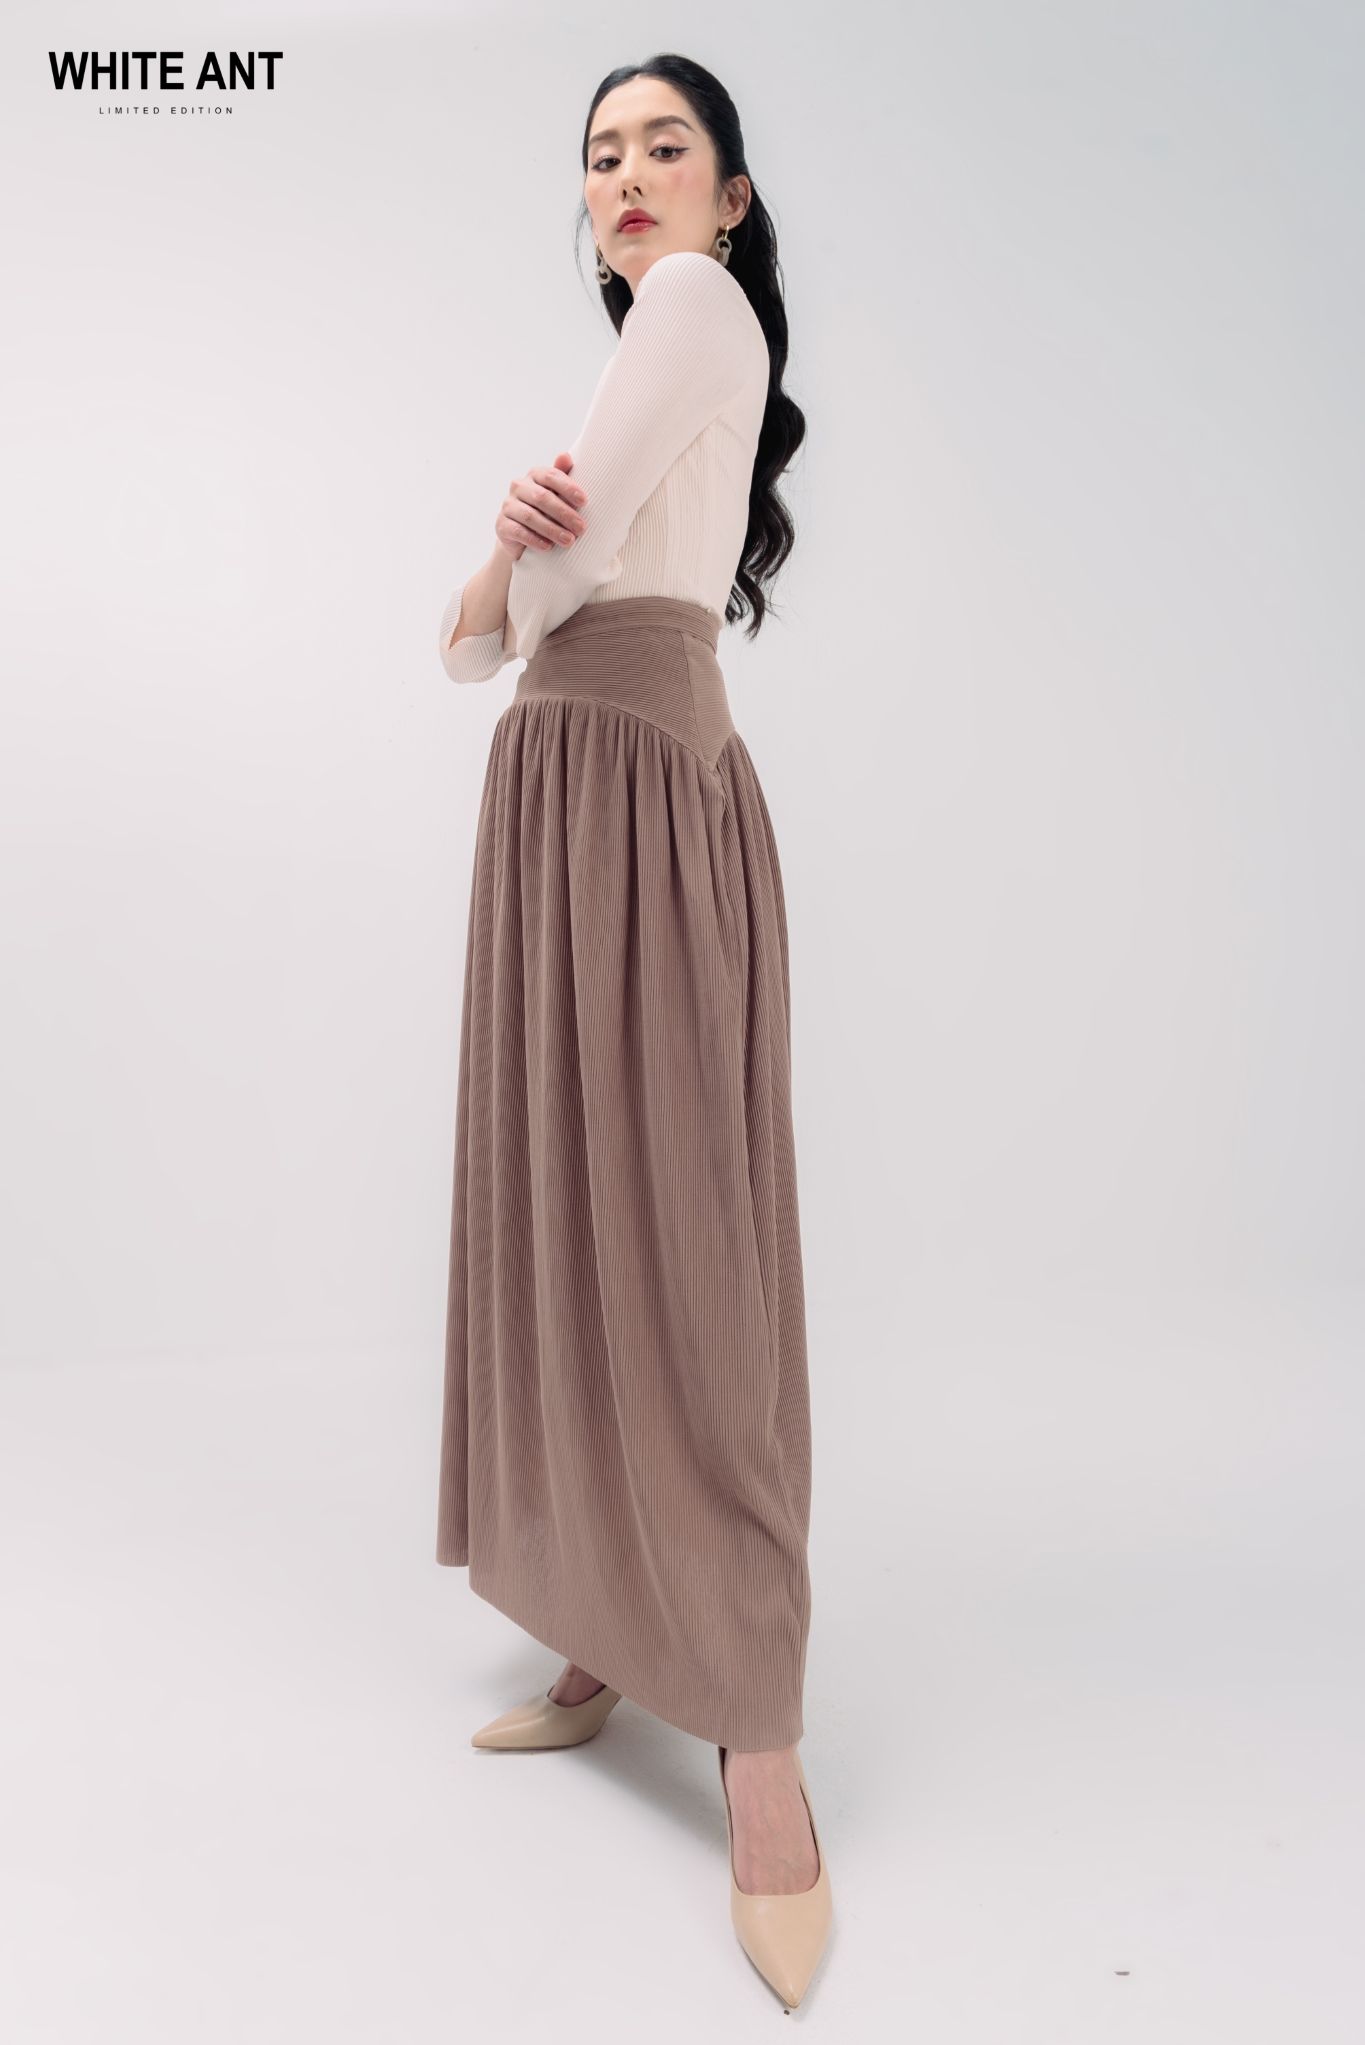 Set áo croptop với chân váy maxi xẻ tà màu trắng - J69 - AloraShop21